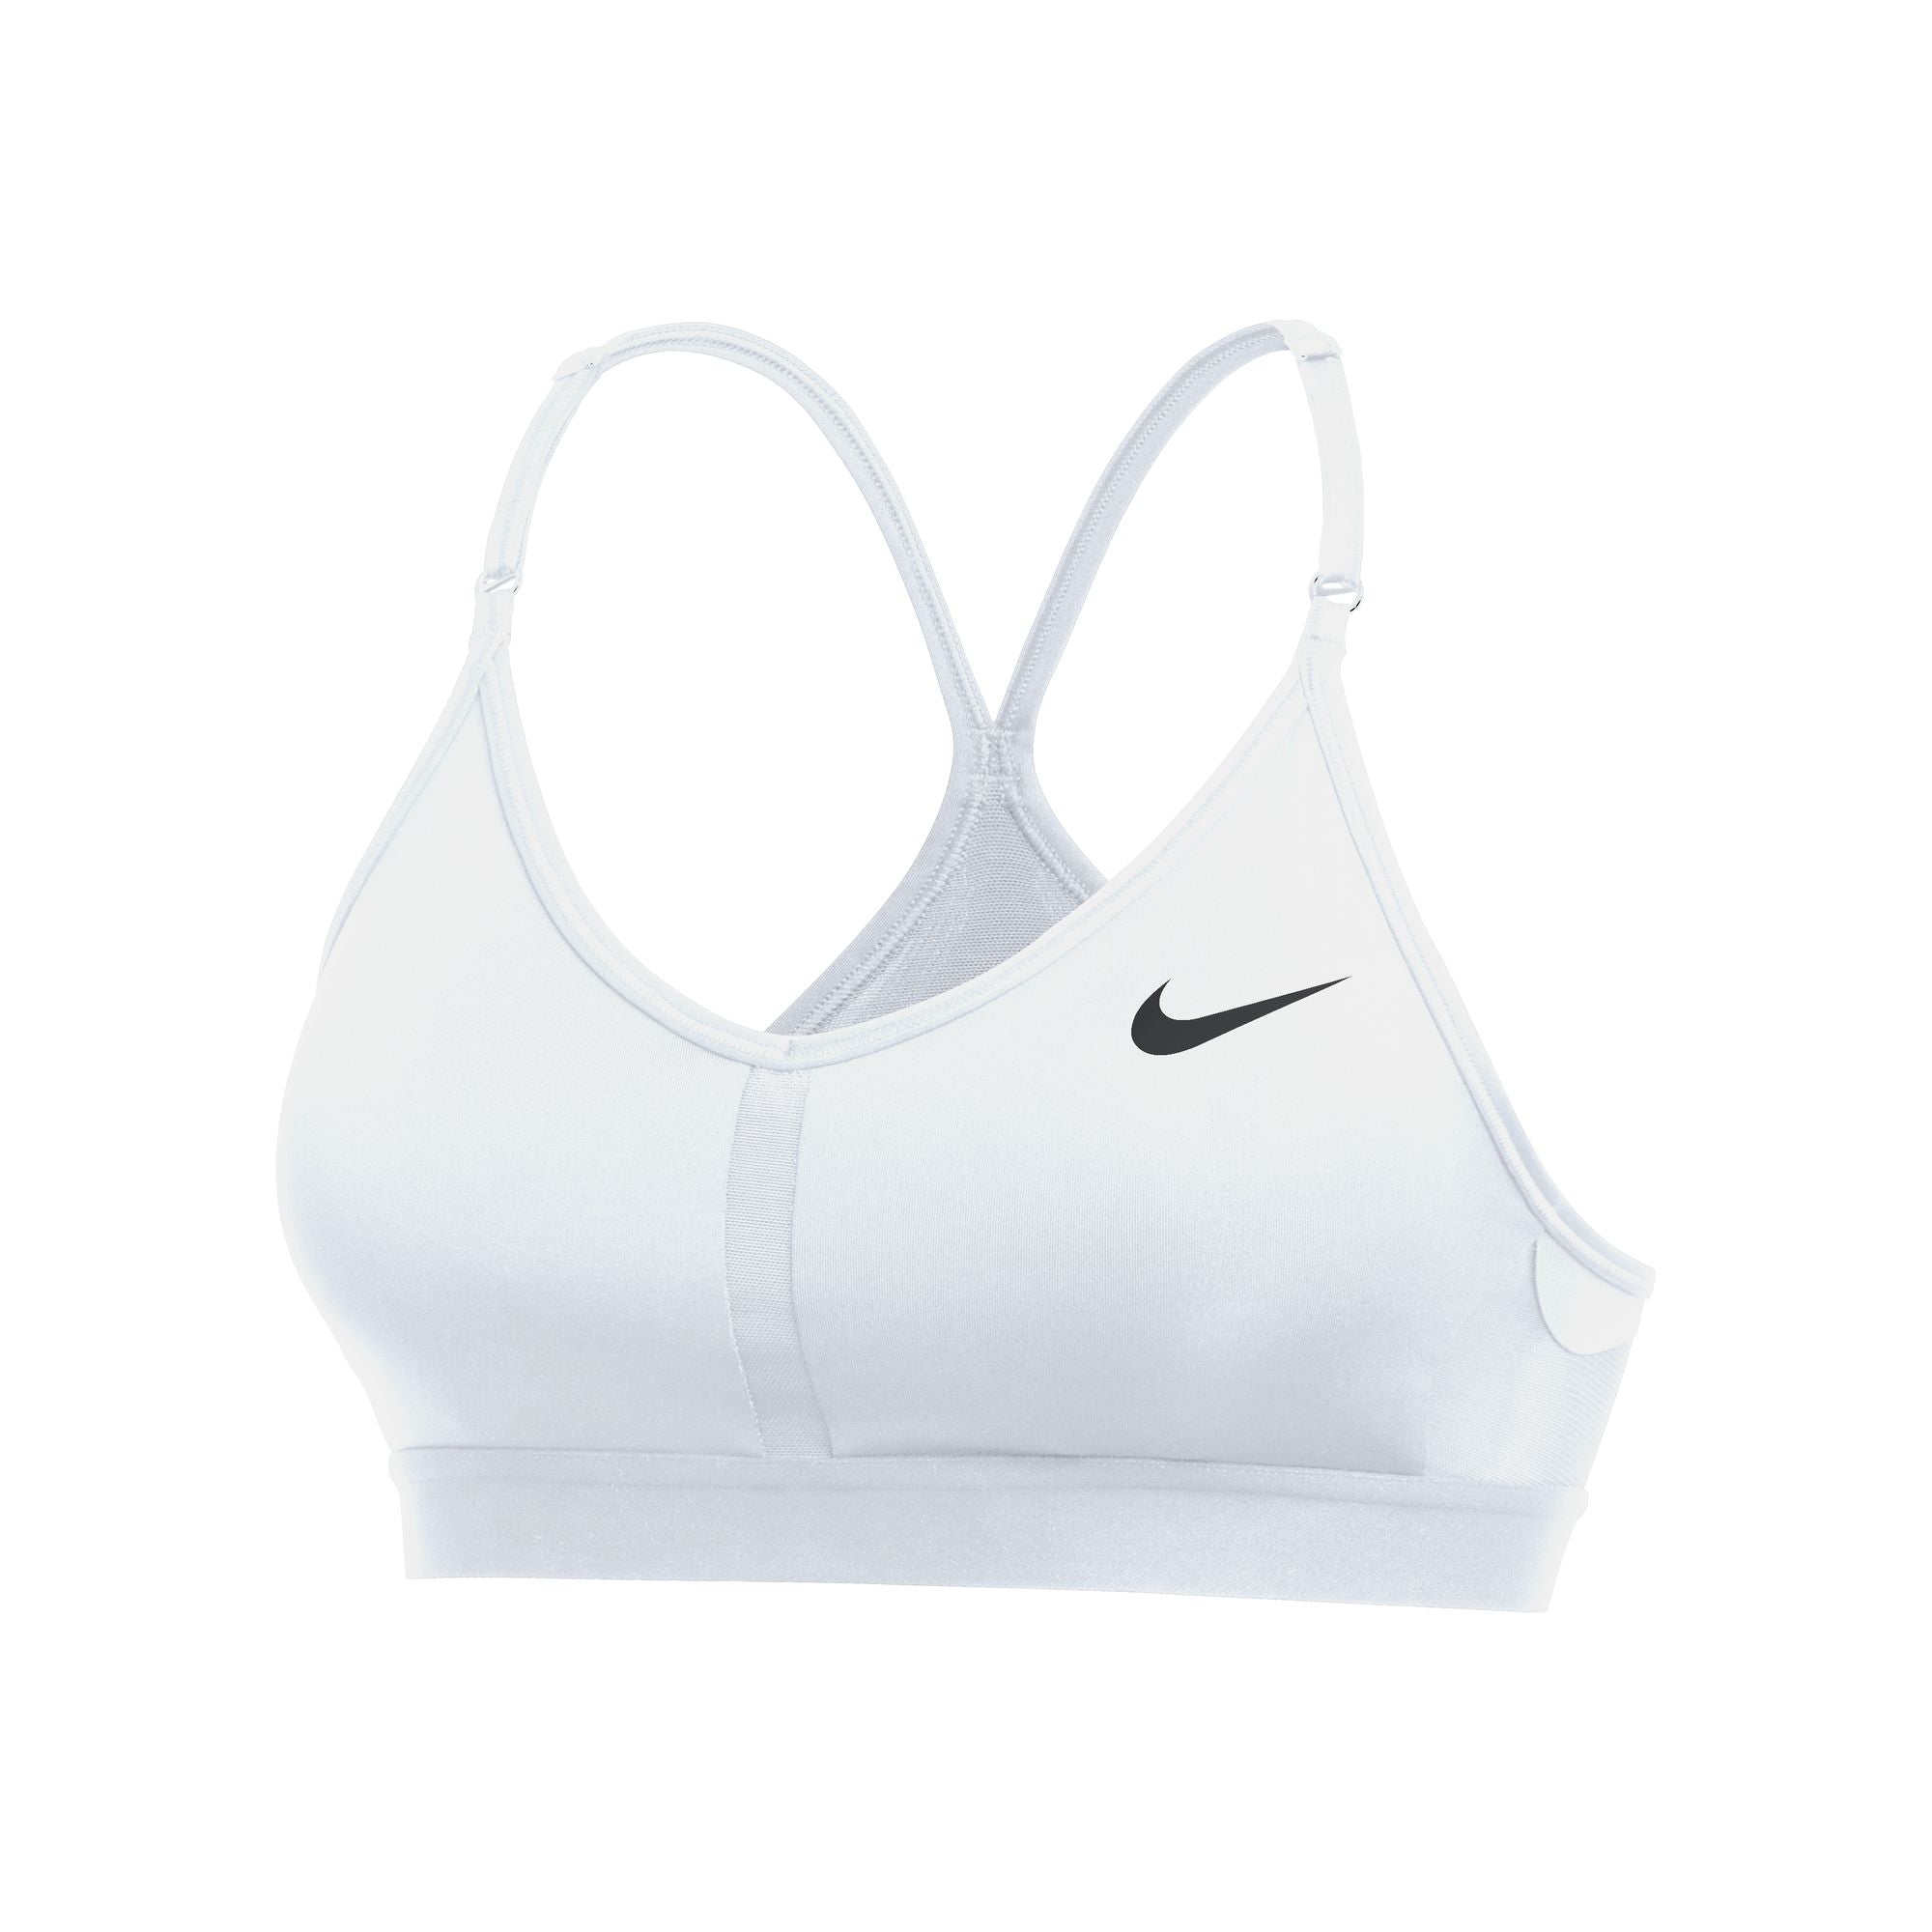 Women's Sports Bras. Nike CA